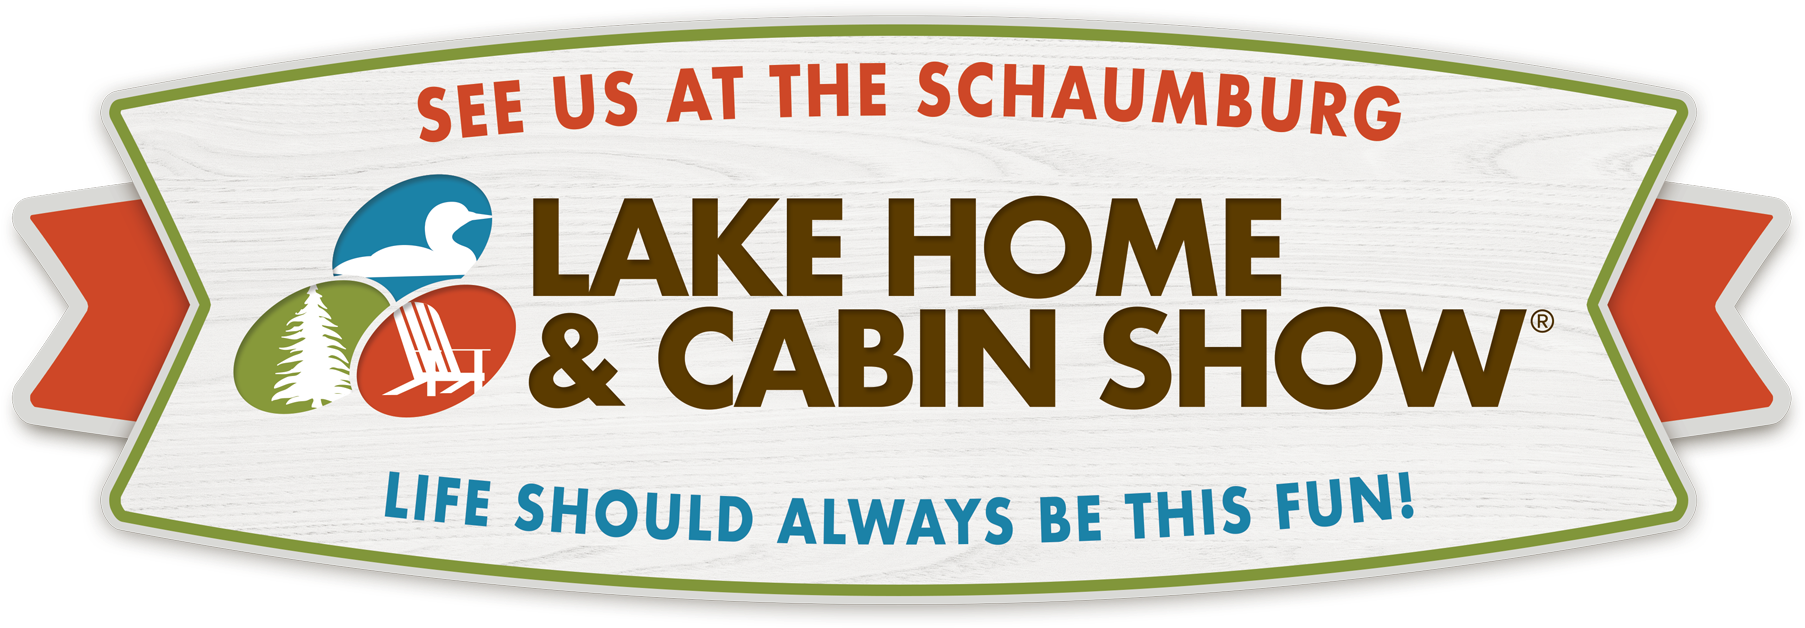 Lake Home Cabin Show Banner